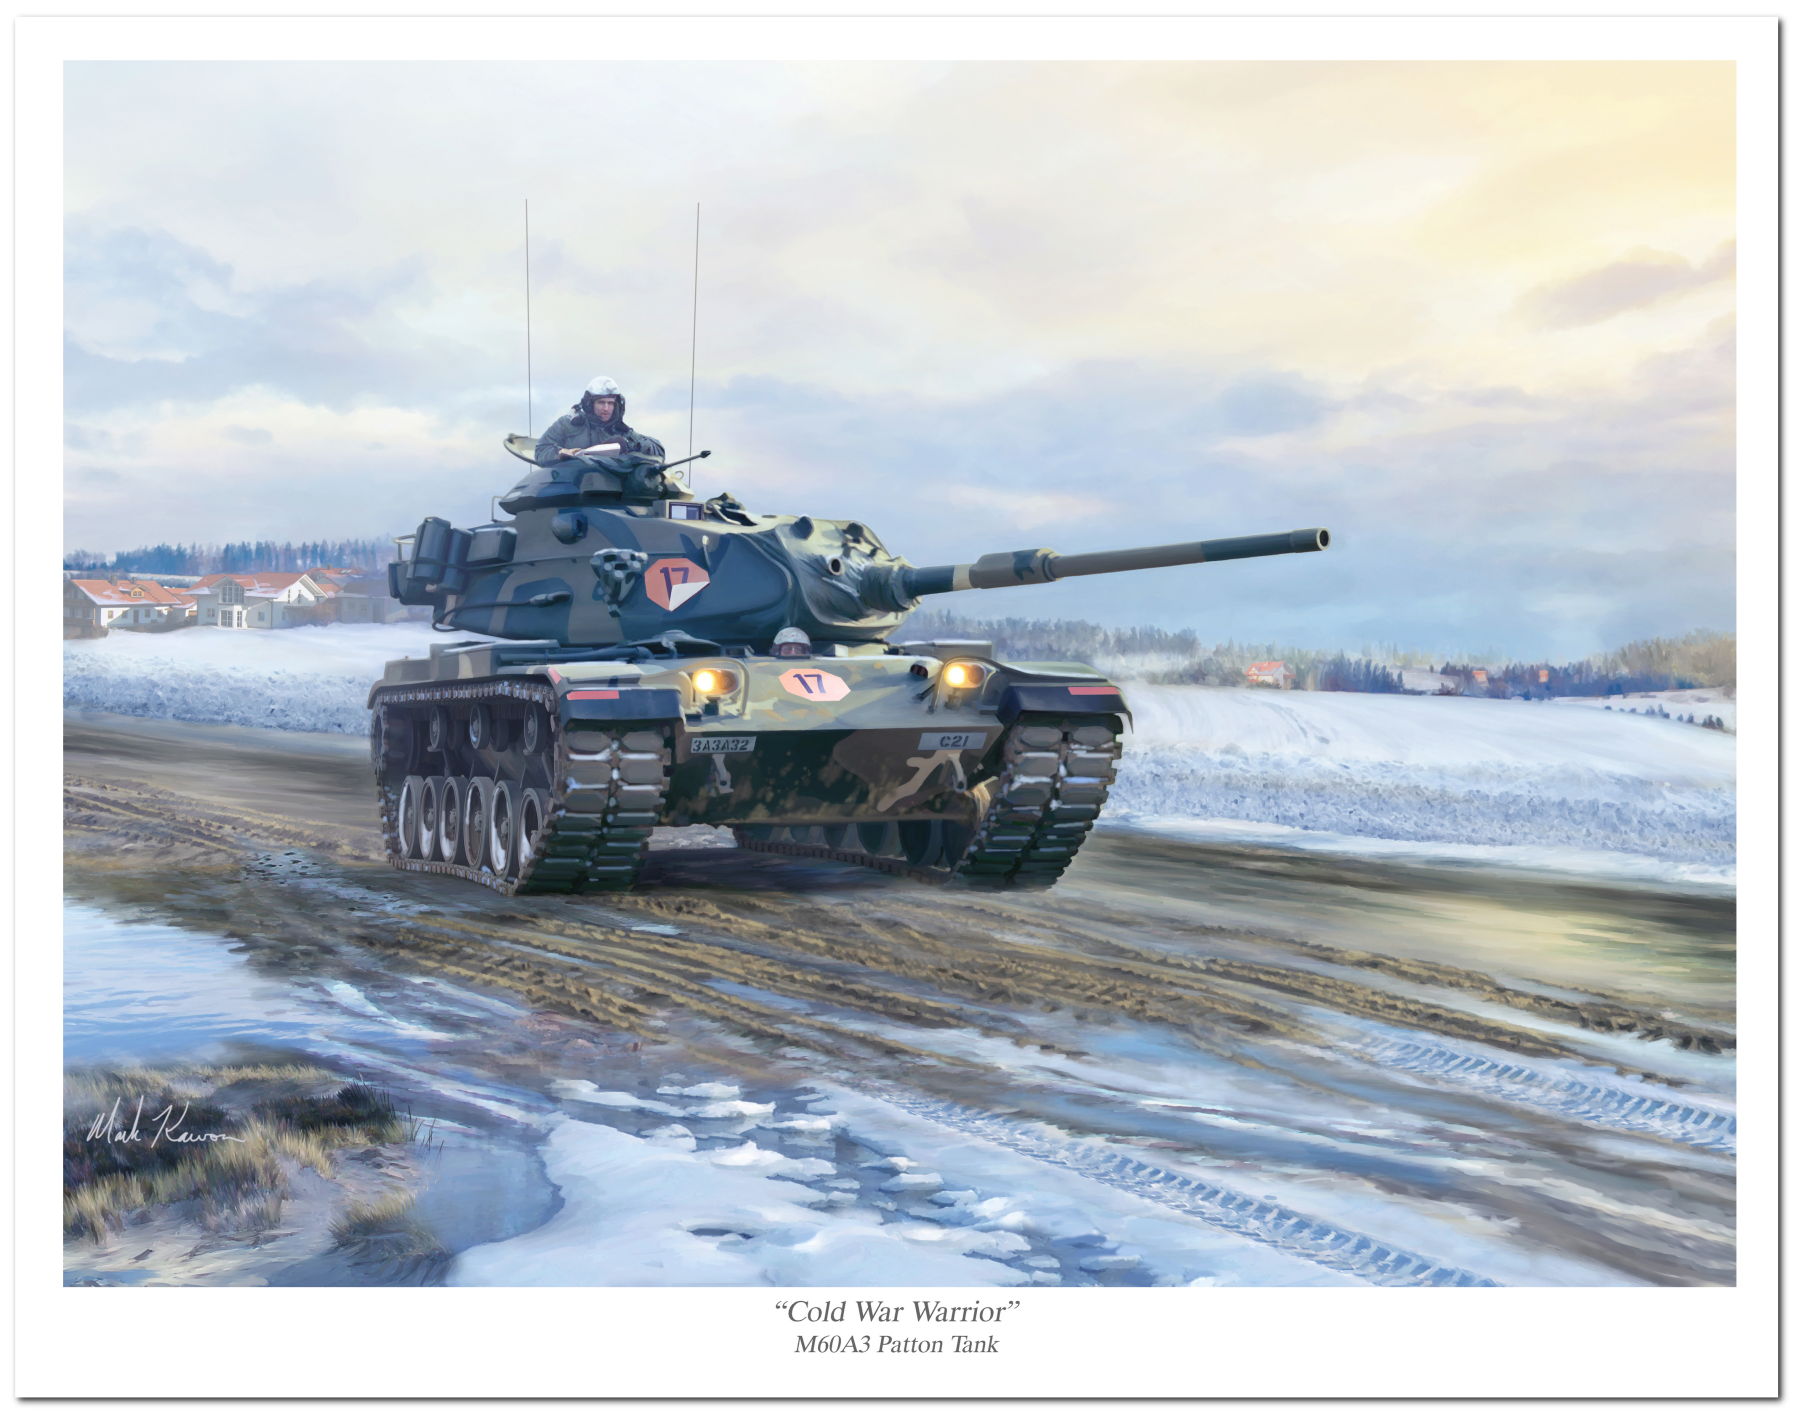 "Cold War Warrior" by Mark Karvon featuring the M60 Main Battle Tank